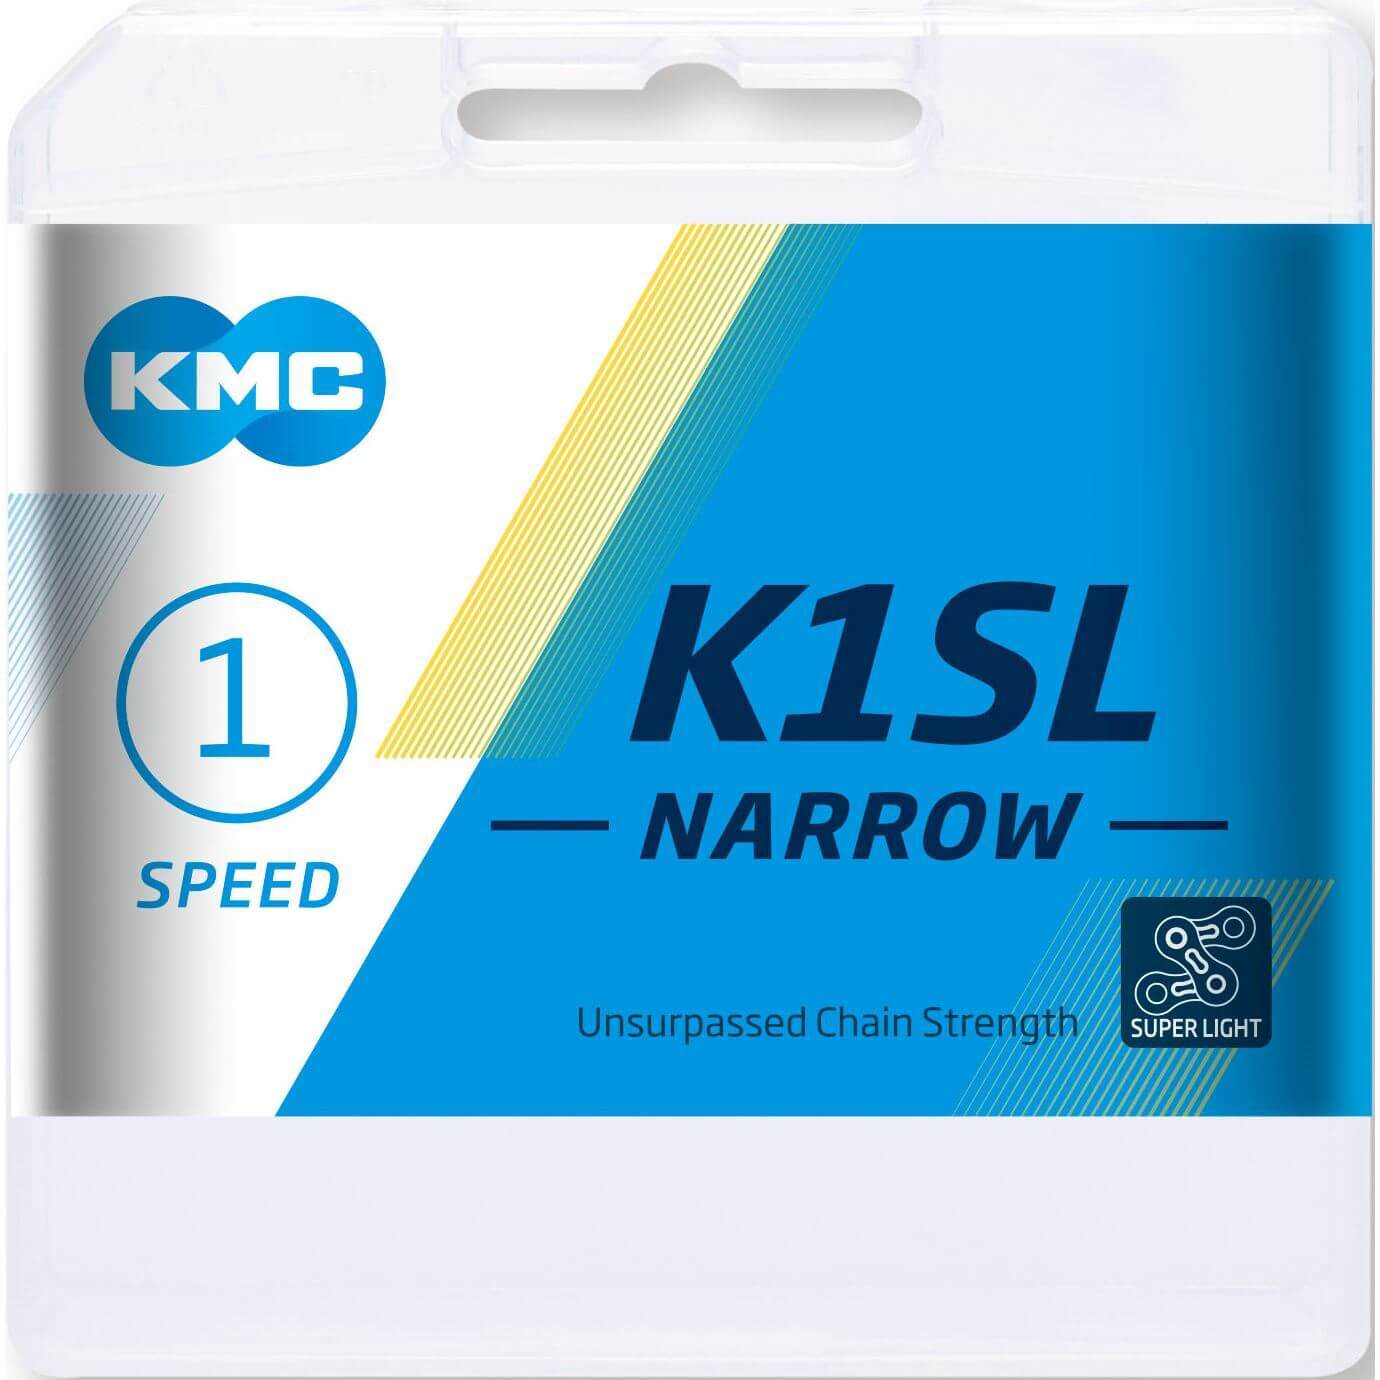 KMC kett K1SL 3/32 narrow silver